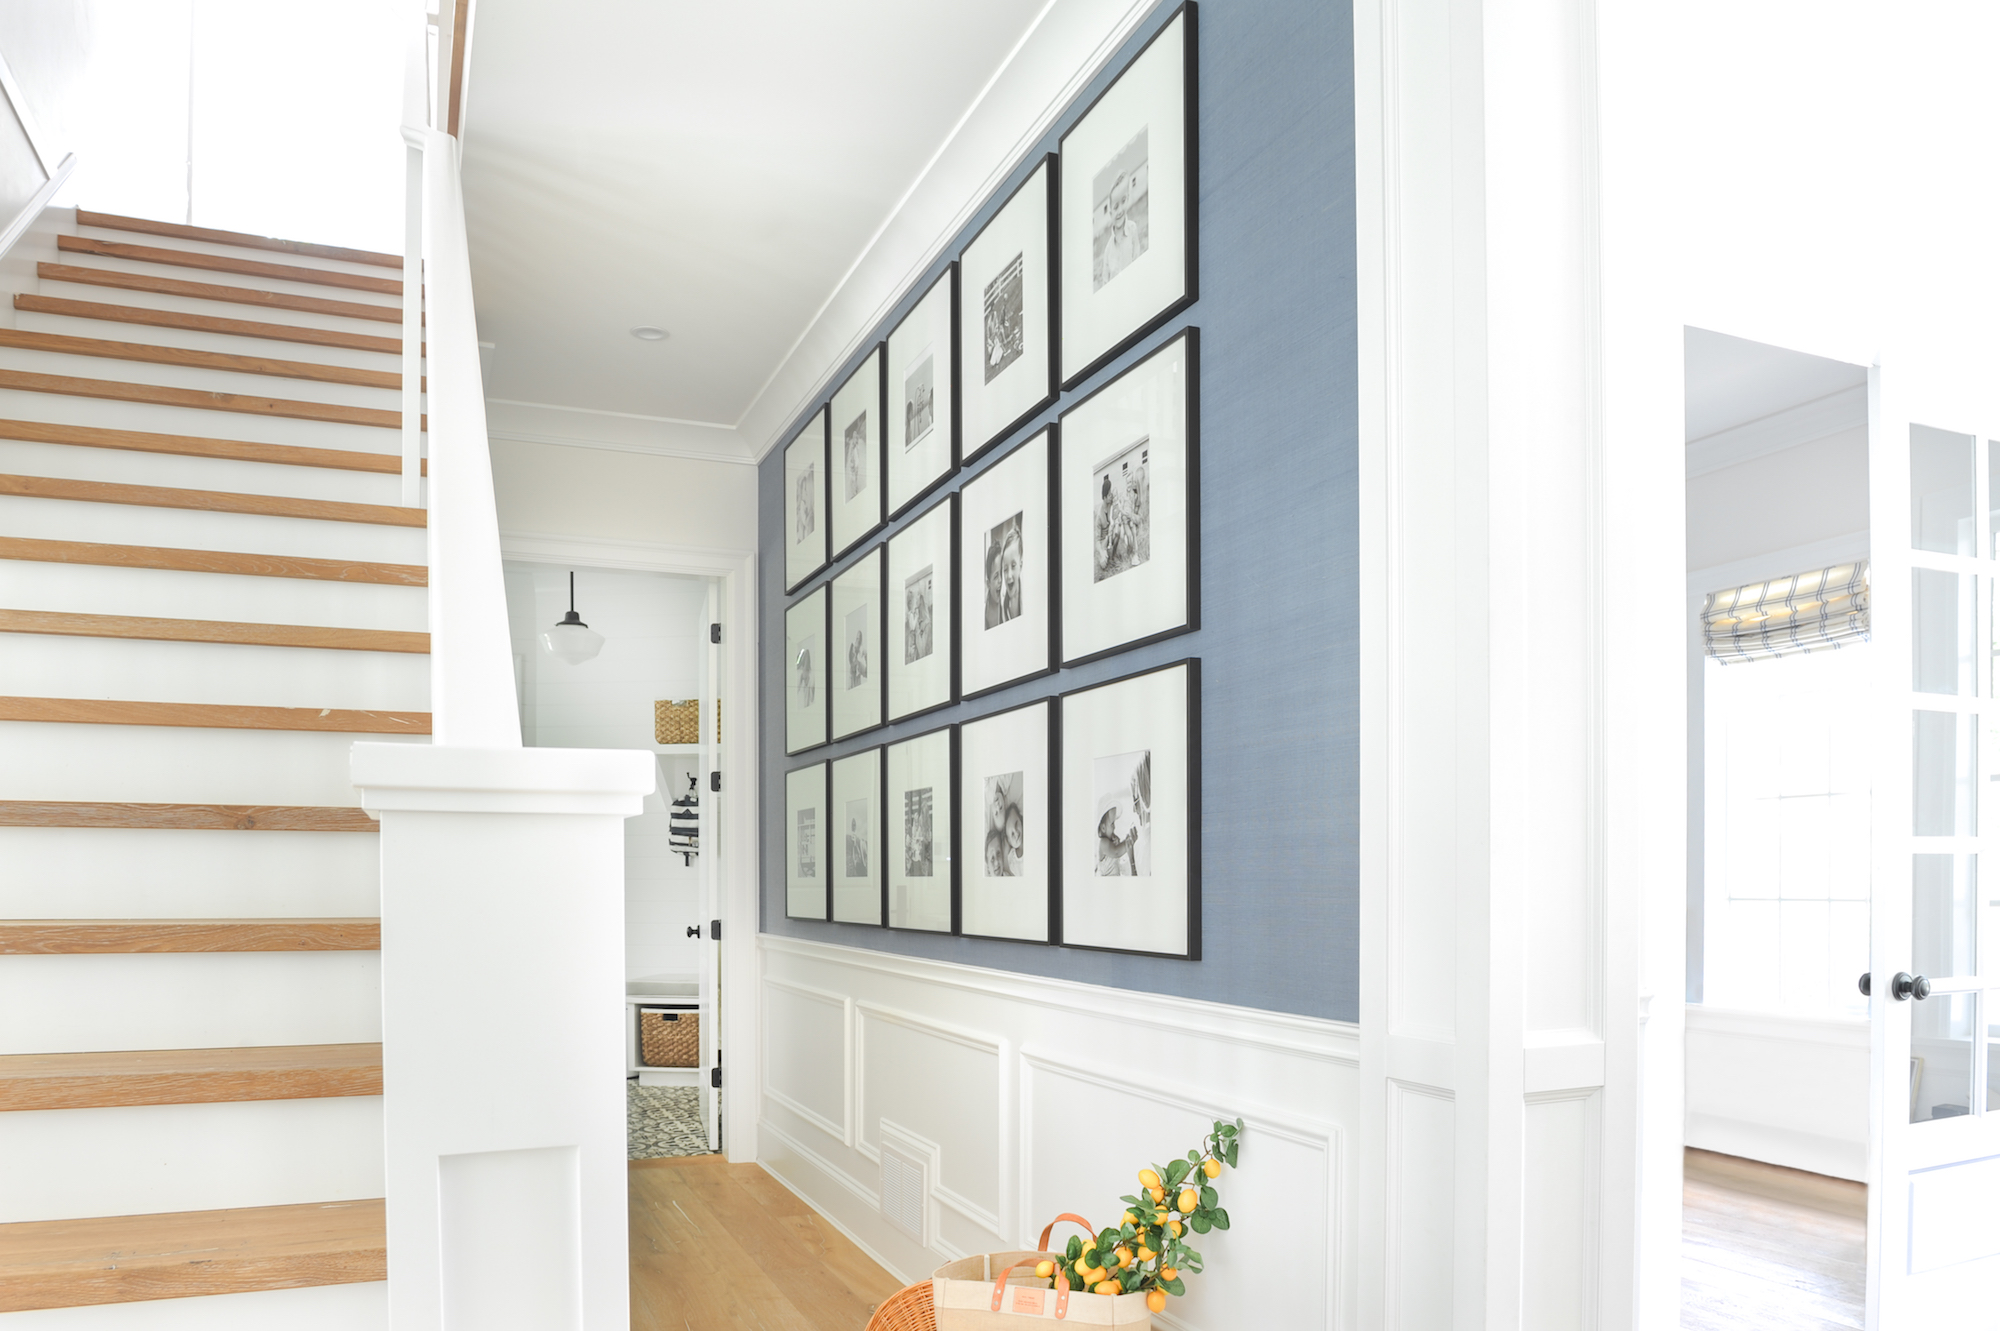 Gallery Wall Long Hallway - HD Wallpaper 